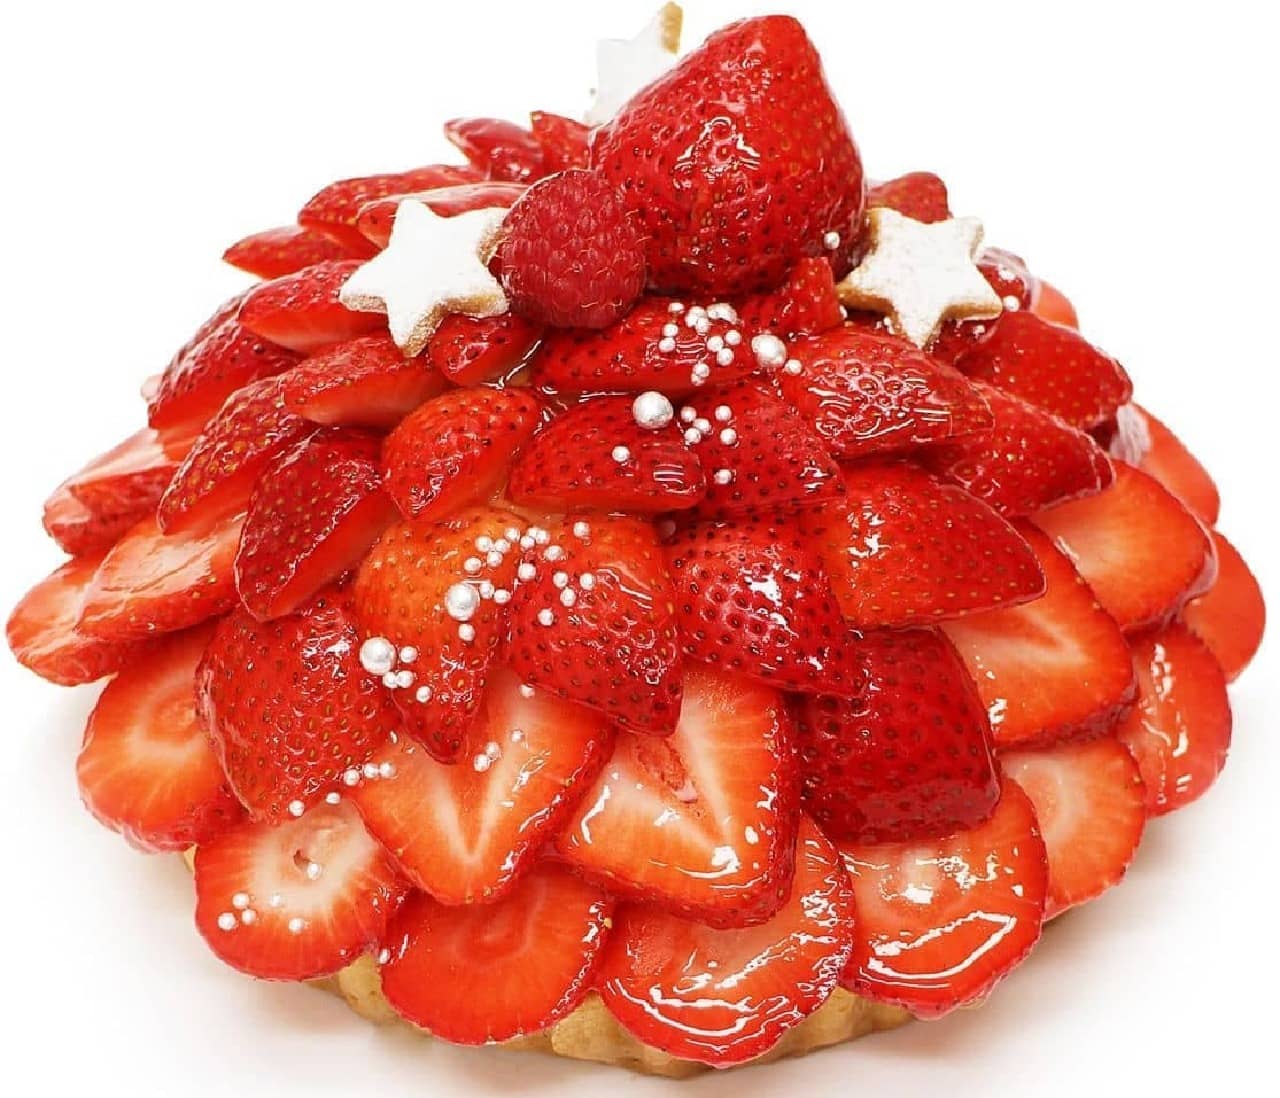 Cafe comme ca "Fukuoka strawberry" Amaou "cake"